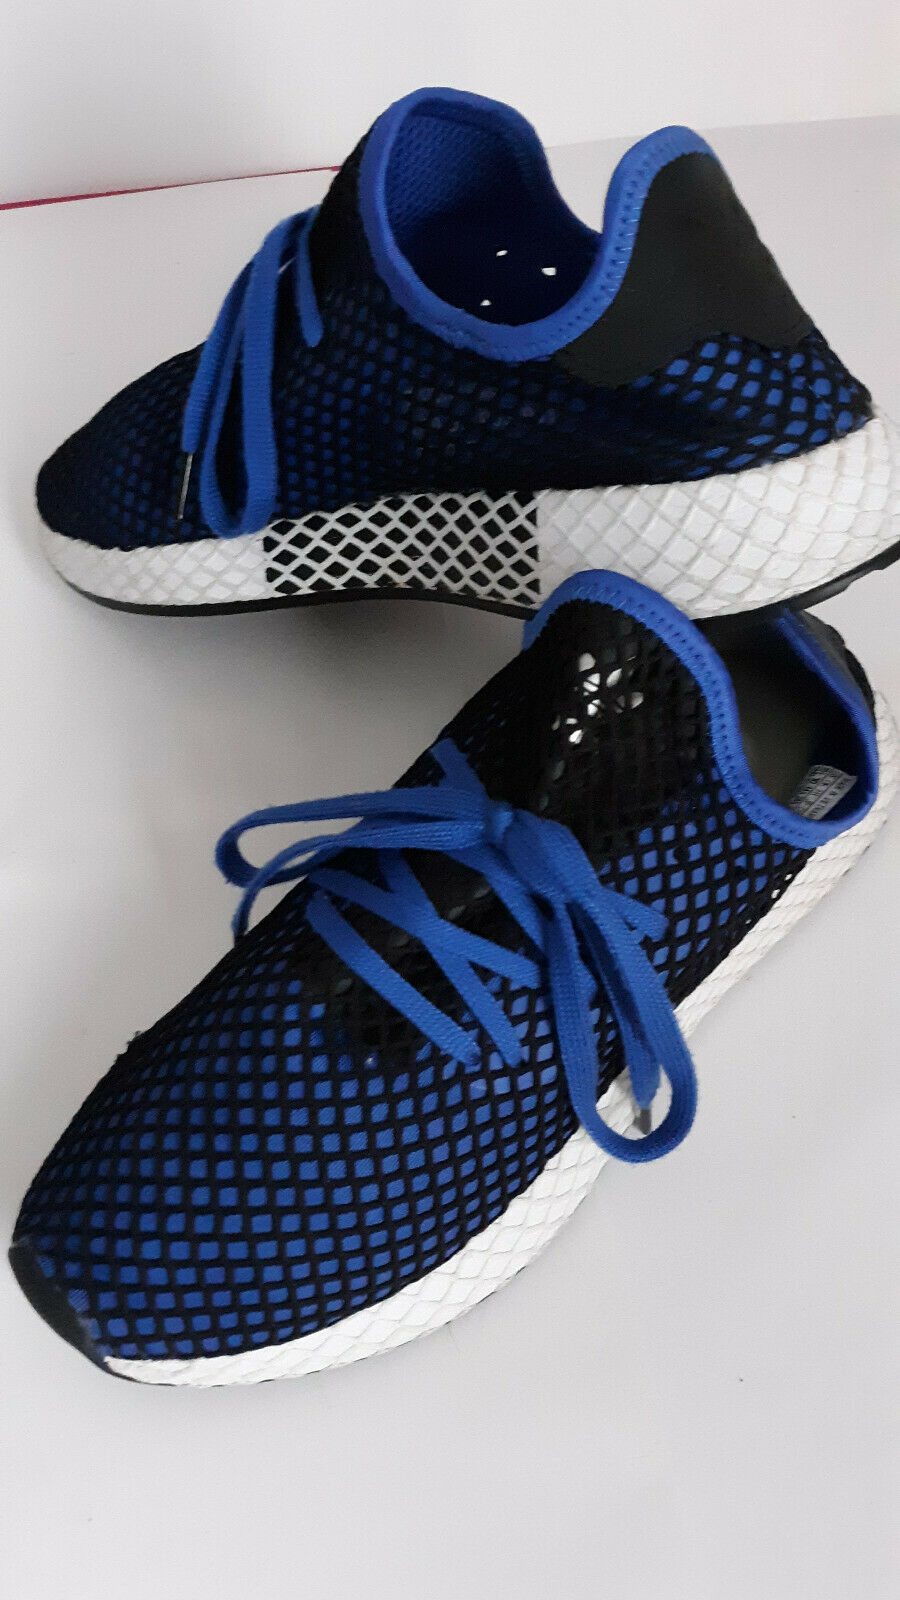 Adidas Deerupt Runner Men's Sz 10.5 Shoes